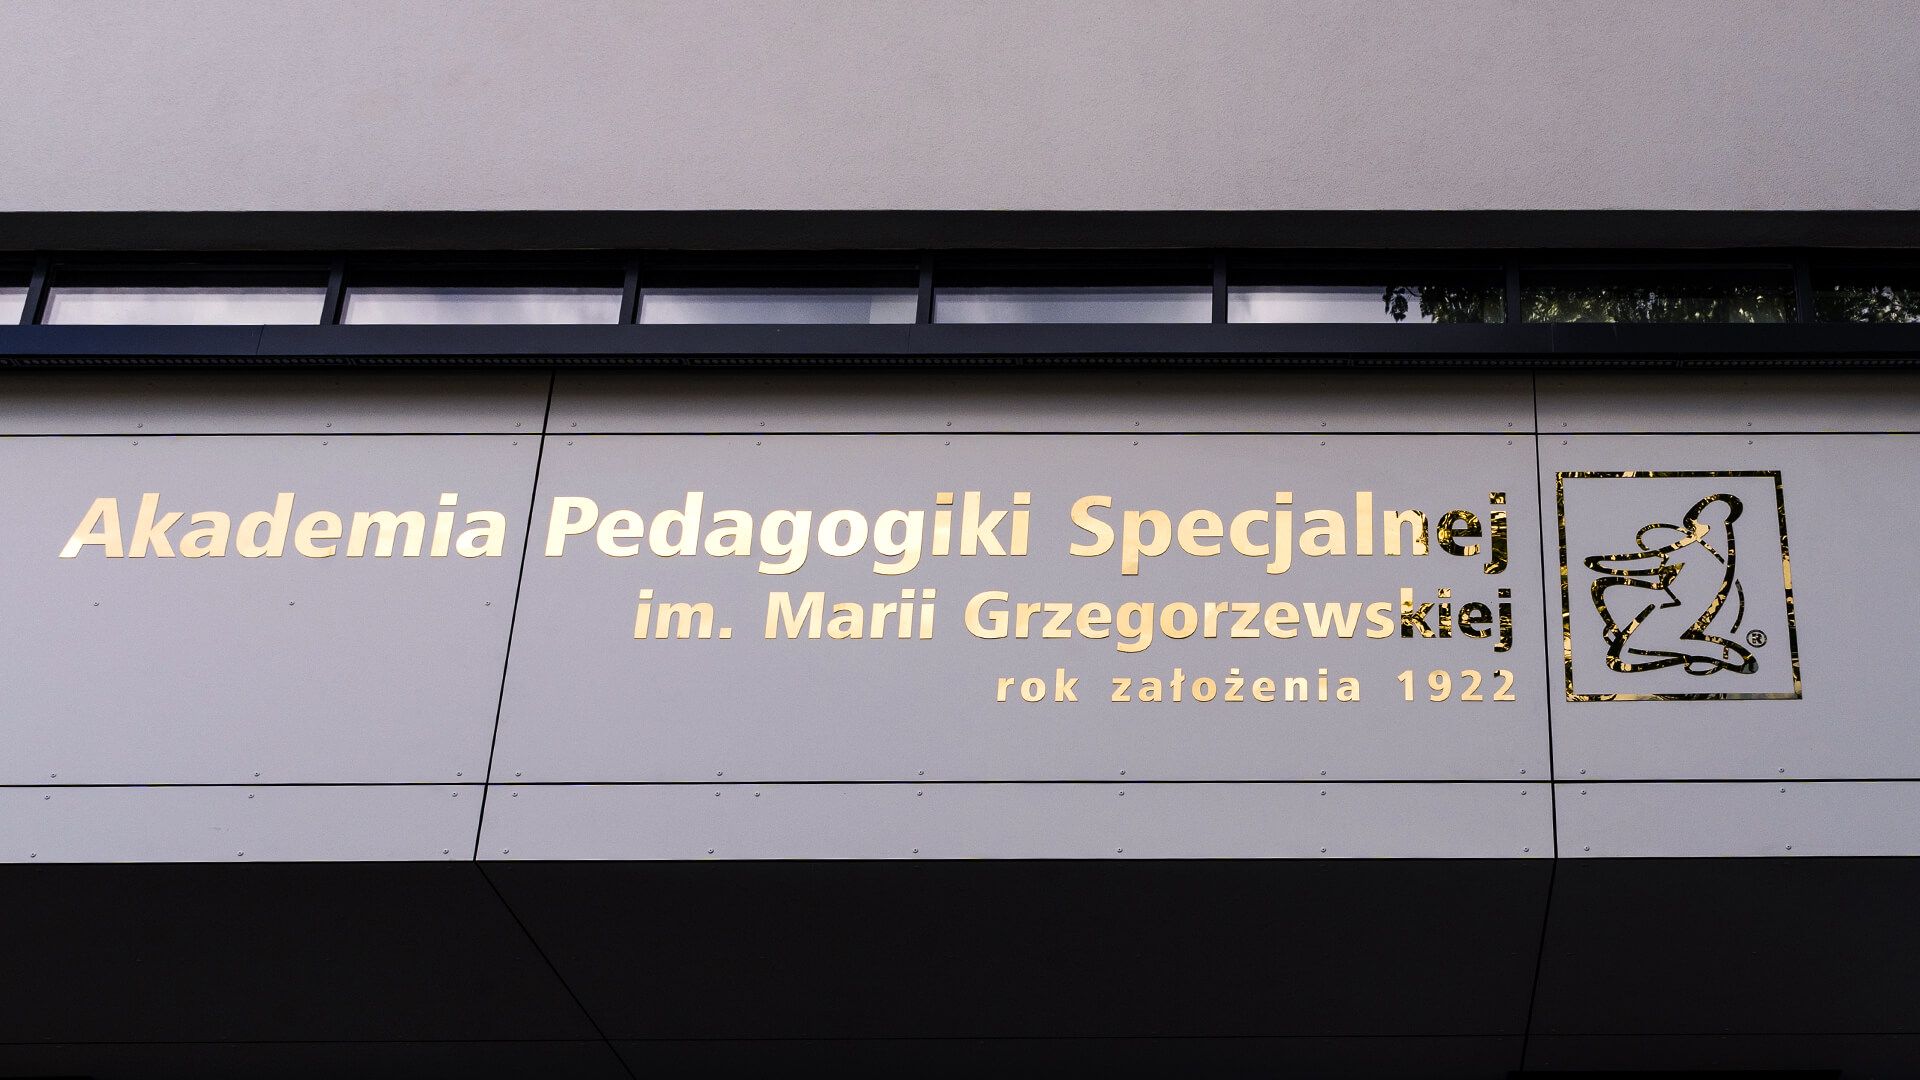 Académie de l'éducation spécialisée - Lettres en métal - Lettres dorées en acier inoxydable au-dessus de l'entrée.